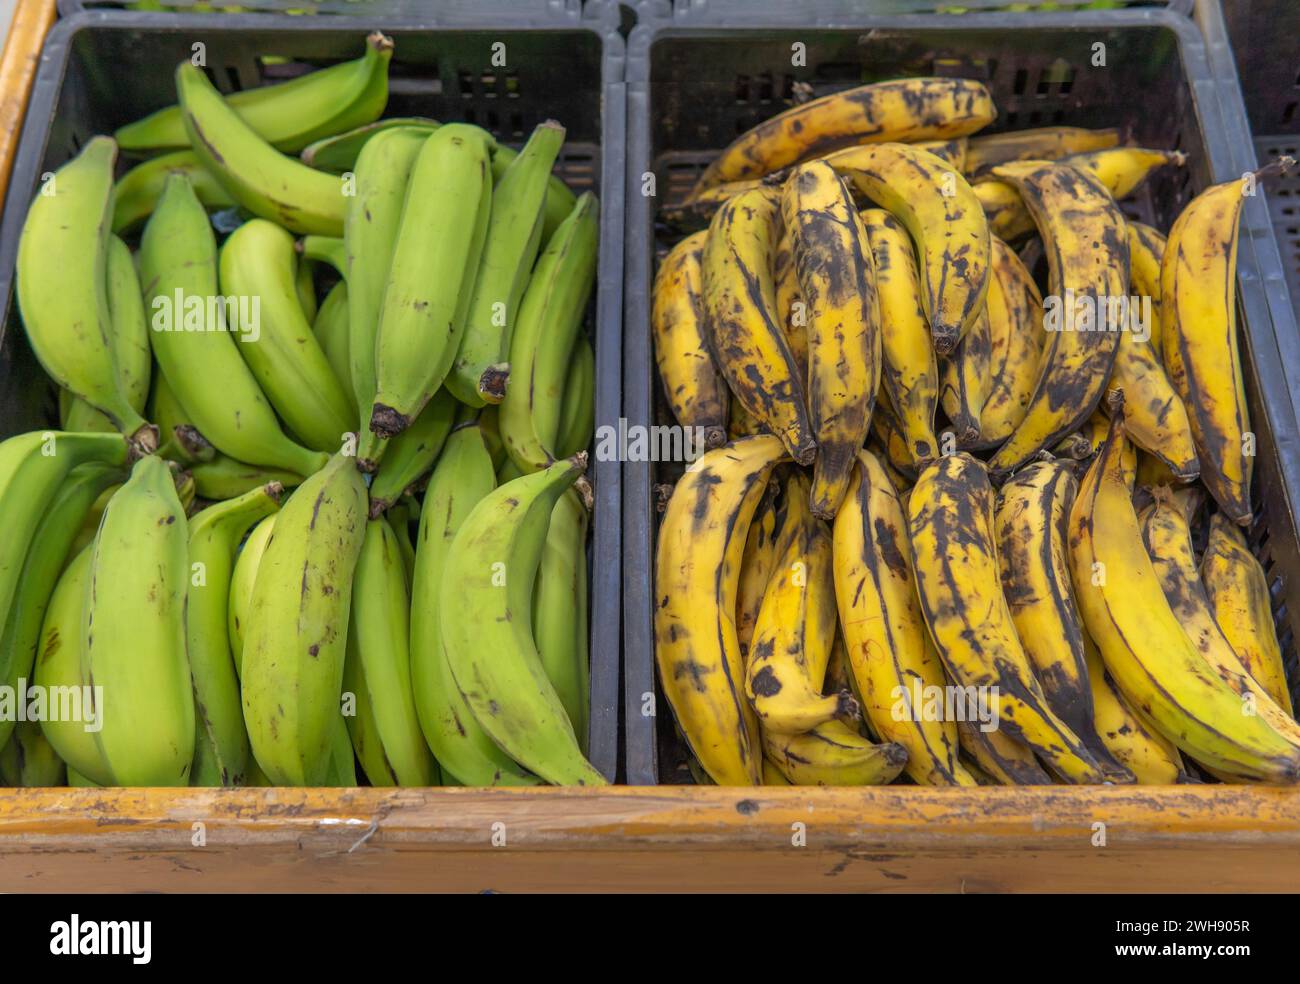 Un cassetto con banane verdi accanto a uno con banane mature che vengono utilizzate per preparare diversi alimenti dell'America Latina Foto Stock